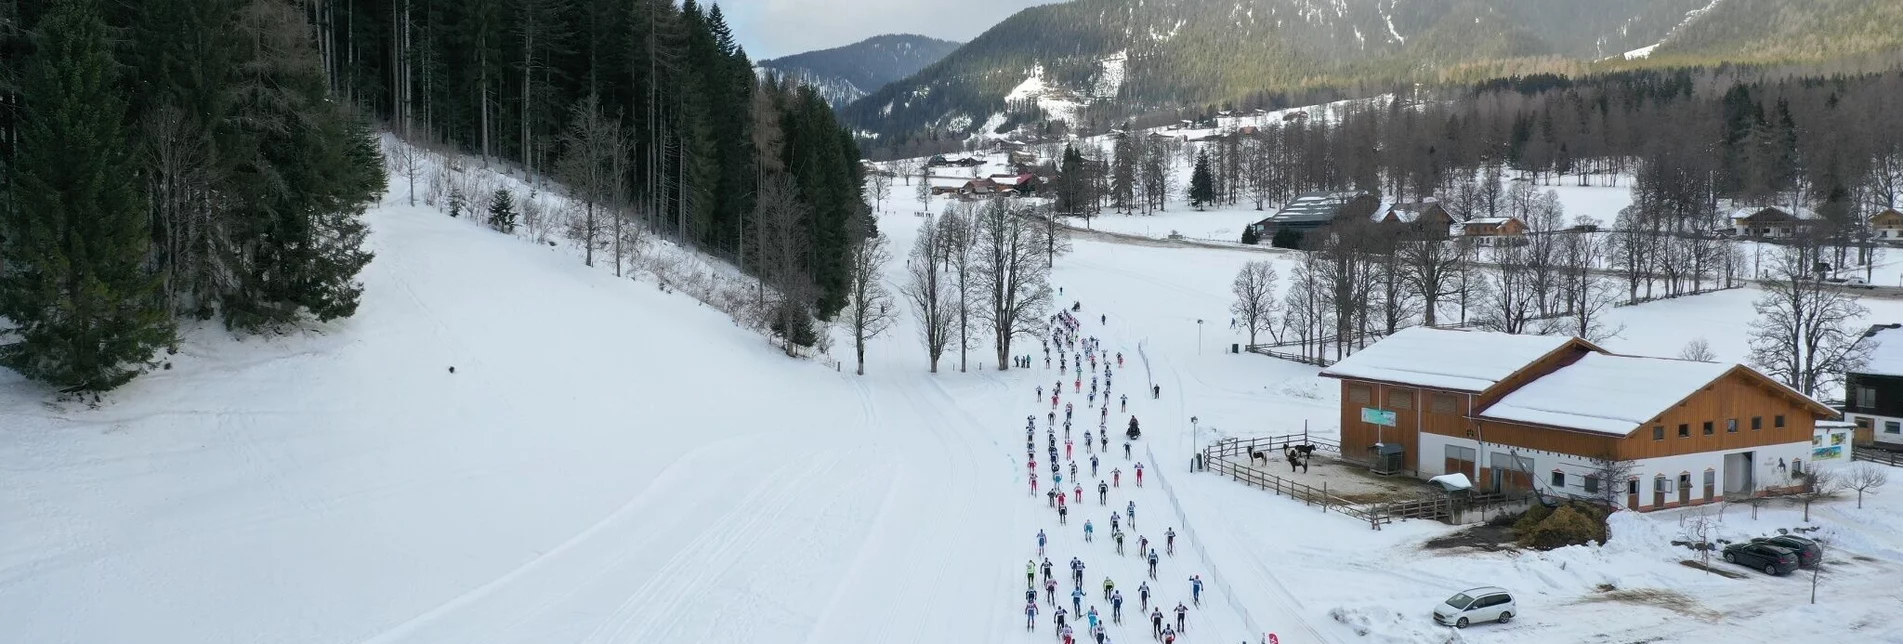 Ski nordic skating Dachsteinlauf 10 km Classic & Skating - Touren-Impression #1 | © Erlebnisregion Schladming-Dachstein